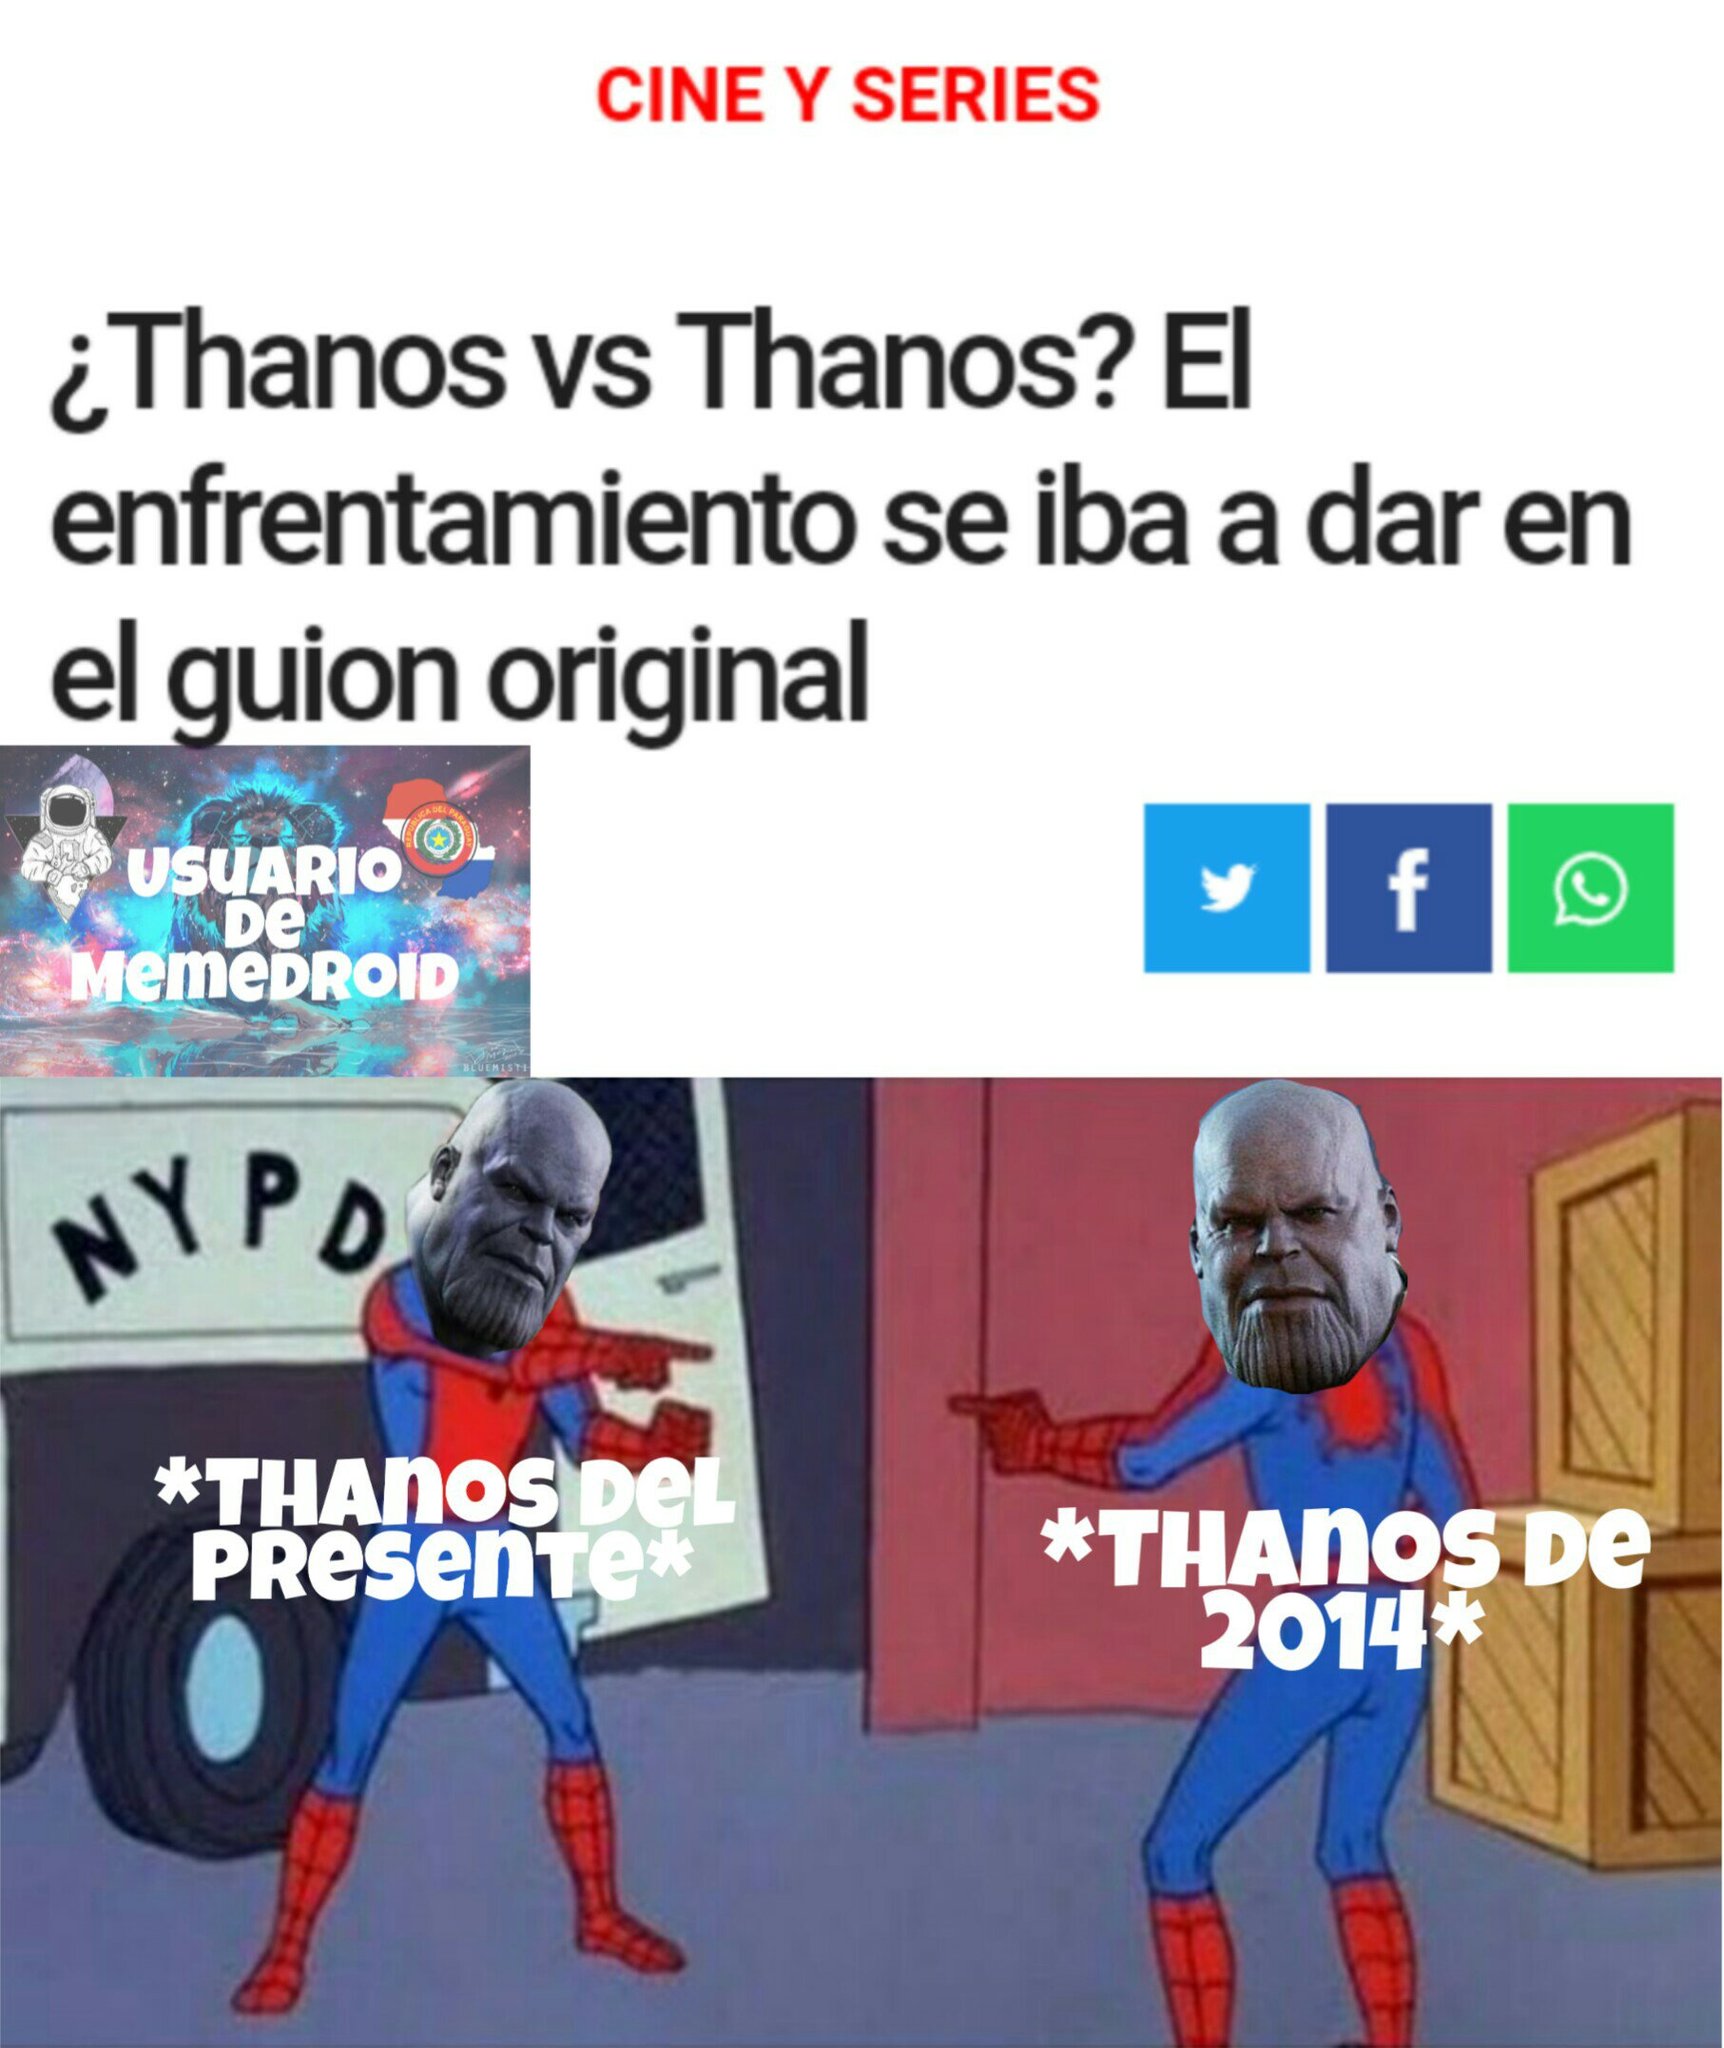 Estos Thanos :happy: - meme